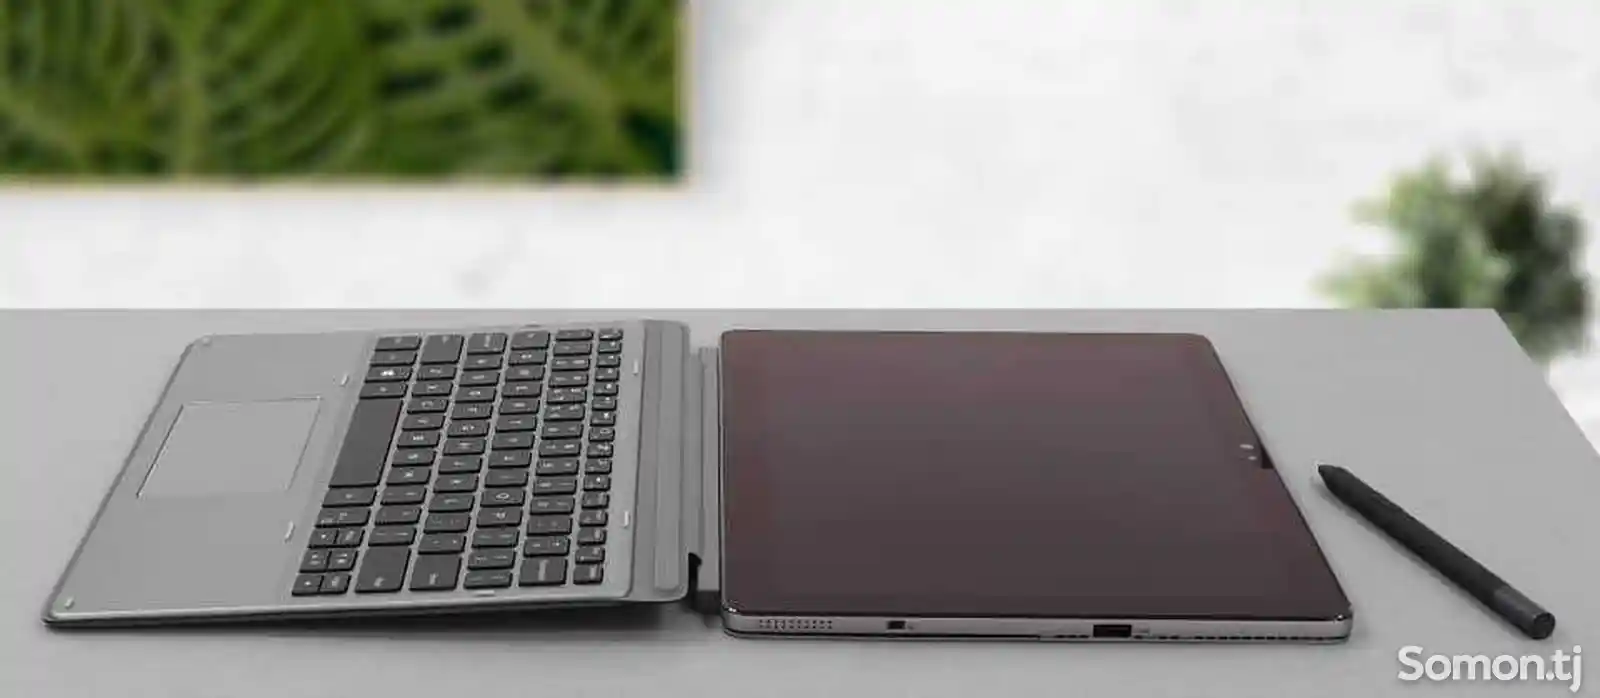 Сенсорный ноутбук Laptop планшет Latitude 7210 2-in-1 Review-8